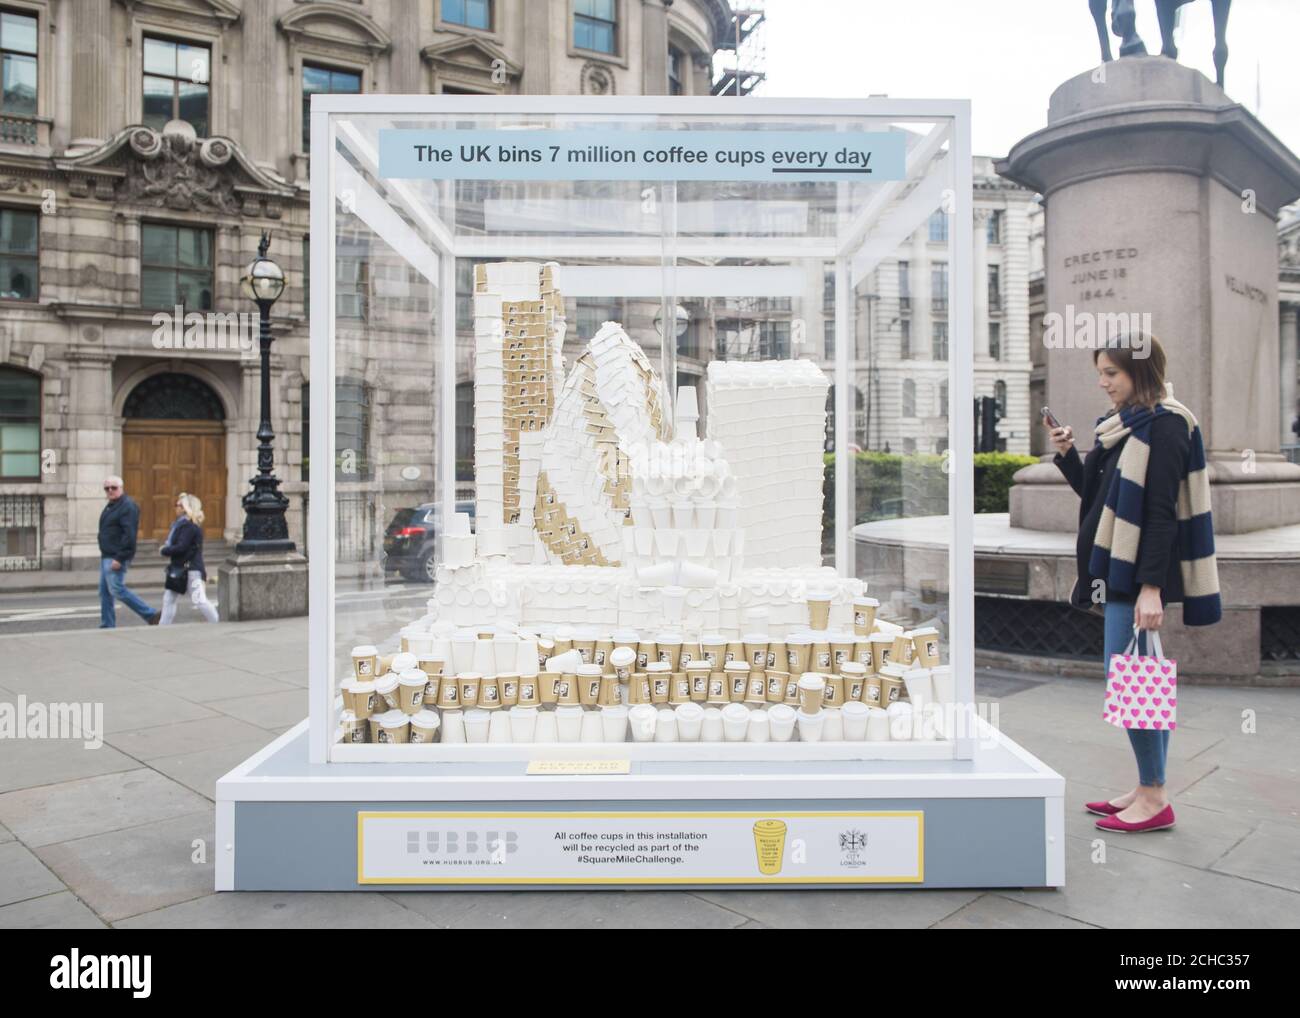 Ein Mitglied der Öffentlichkeit macht ein Foto von einer riesigen Tasse Kaffee in London Skyline Skulptur, enthüllt für die Einführung der Square Mile Challenge, das größte britische Kaffeetassen Recycling-Programm an der Royal Exchange in London. Stockfoto